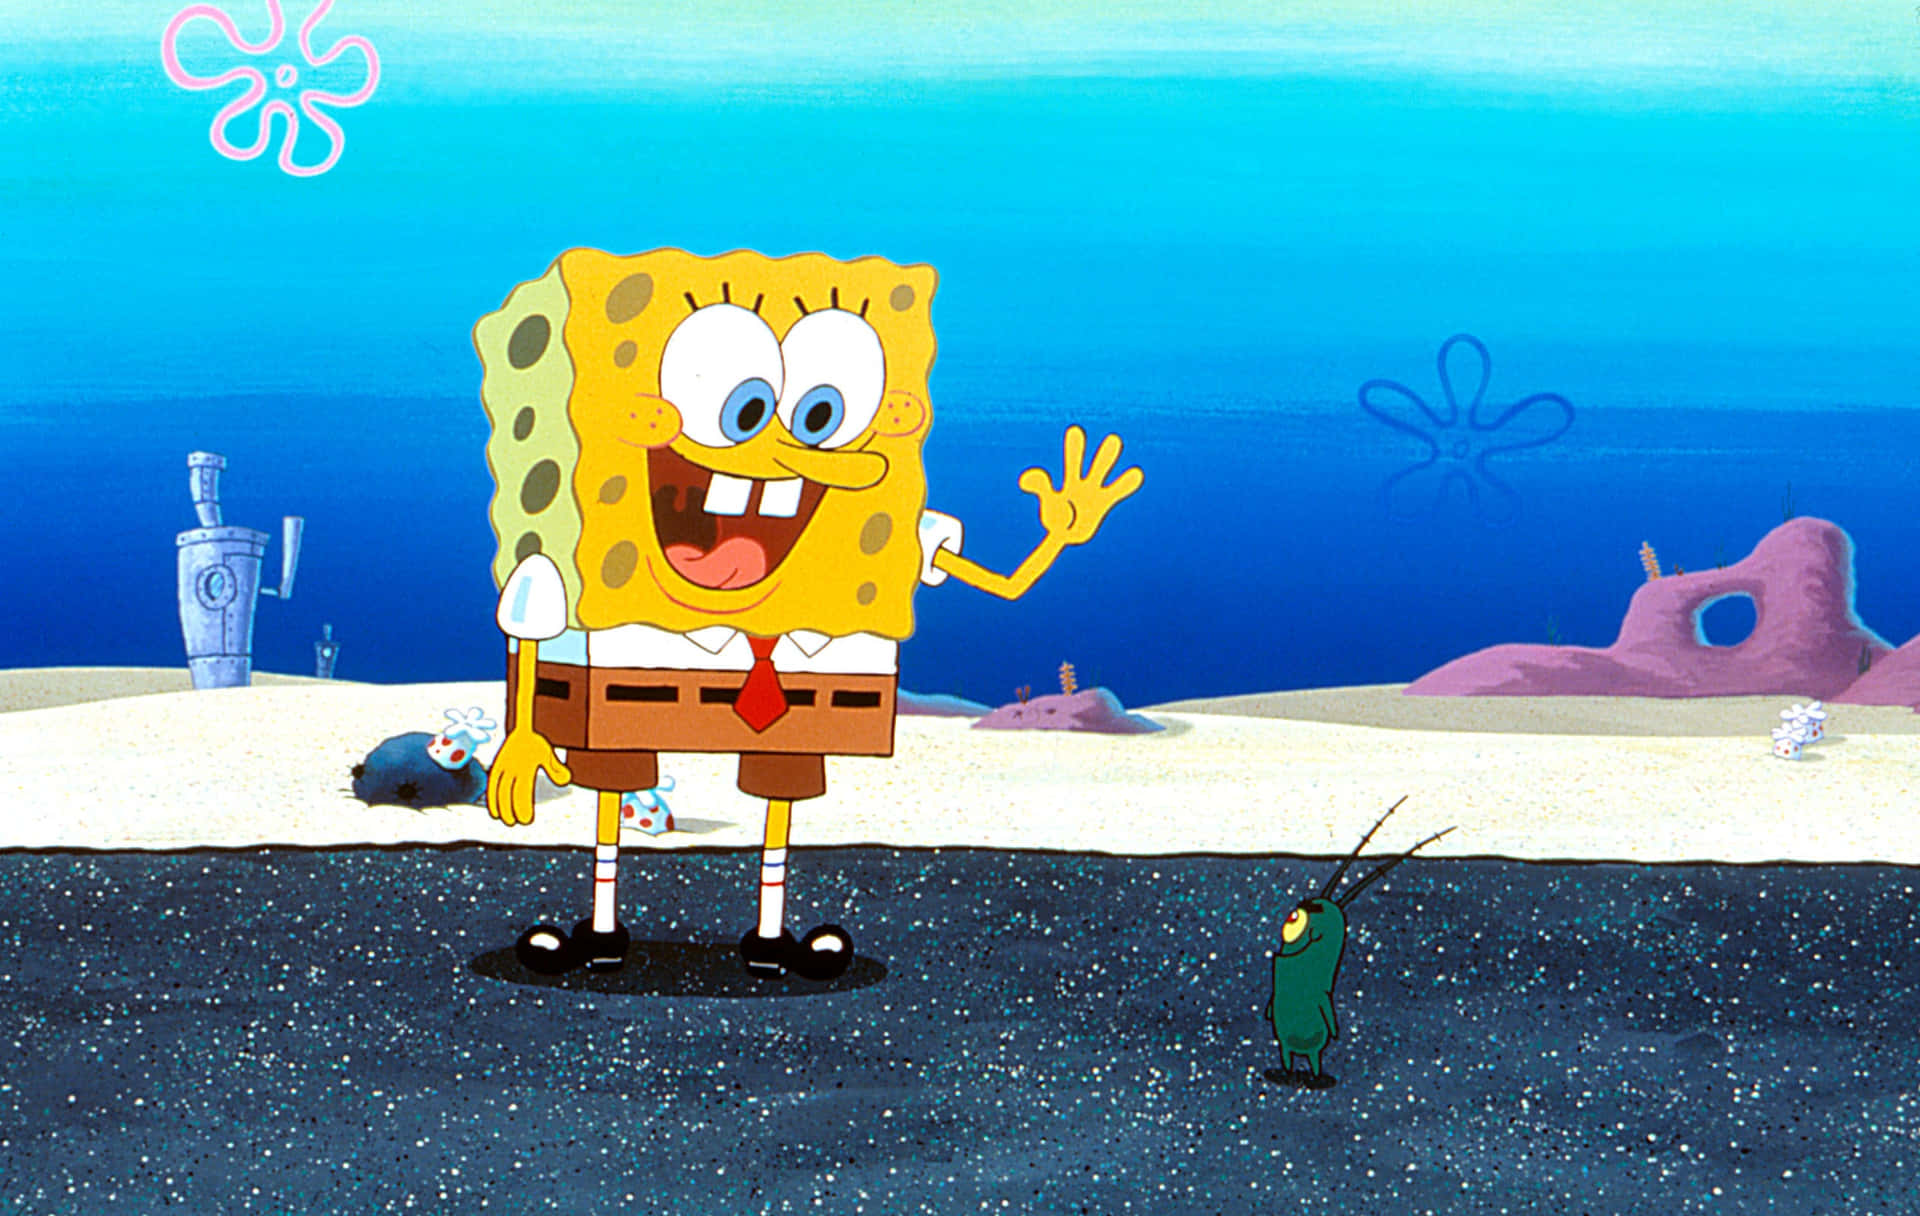 Spongebobsquarepants Con L'immagine Di Plankton